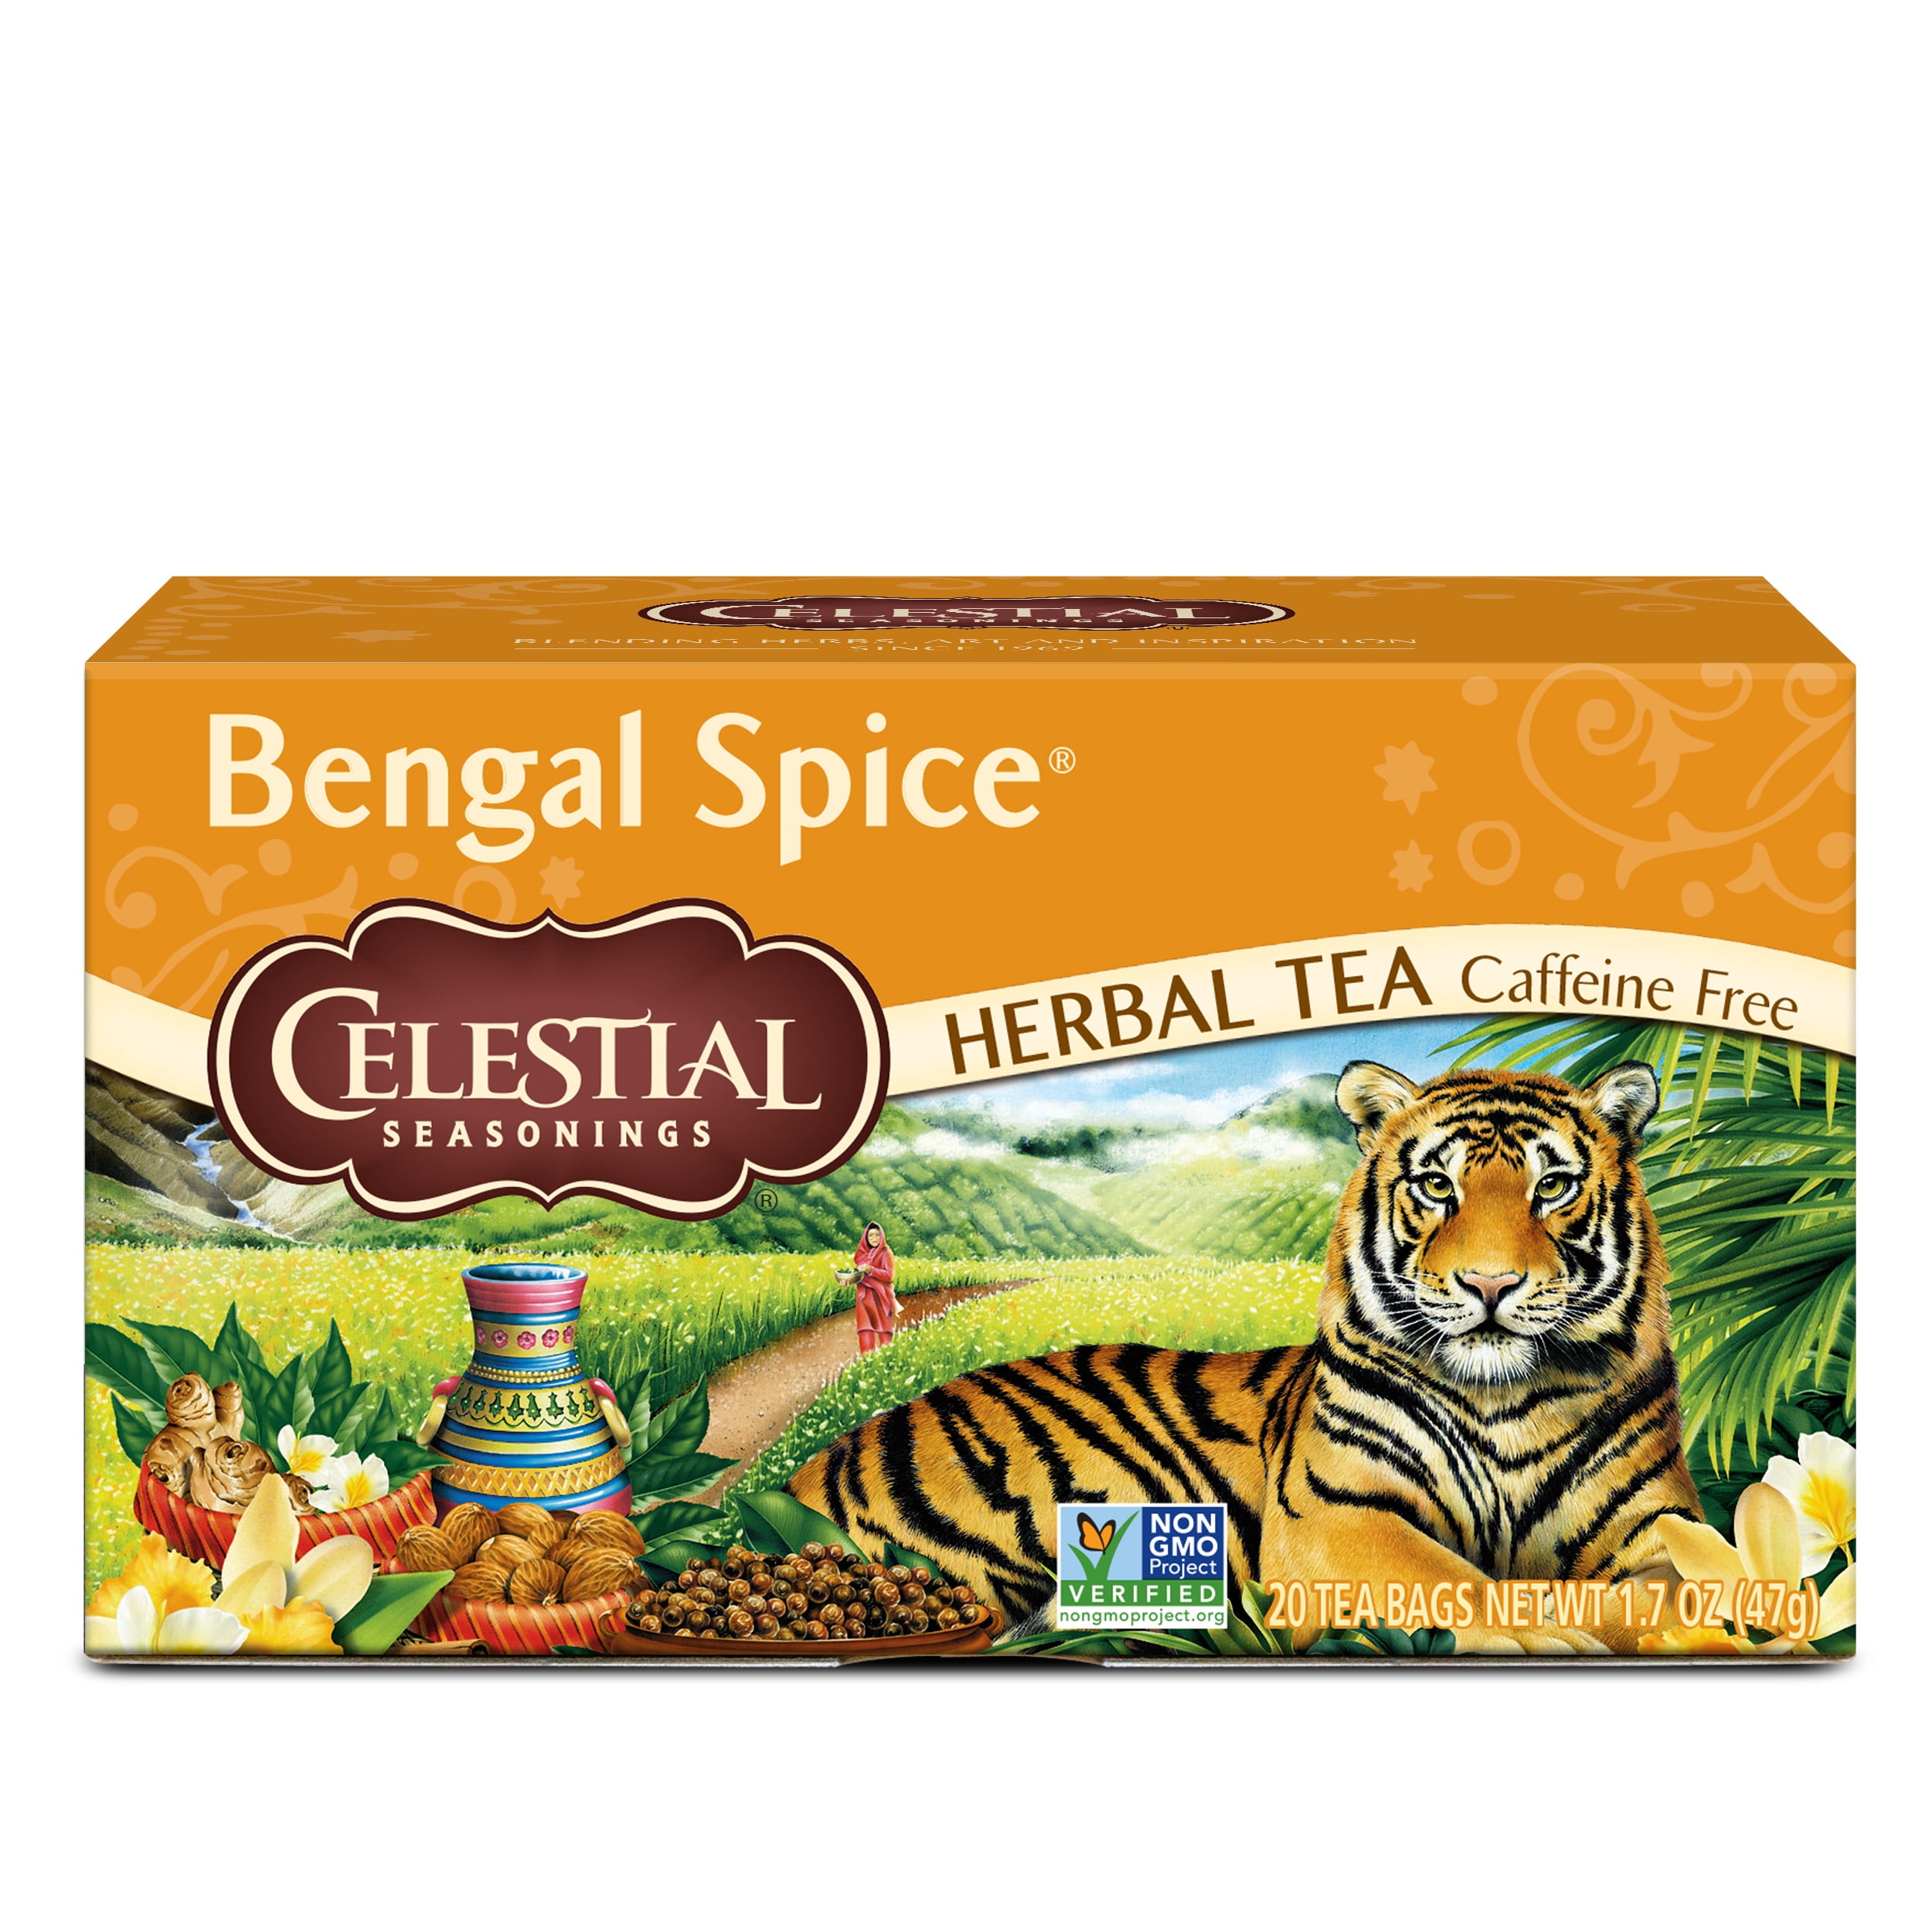 Celestial Seasonings, Bengal Spice 